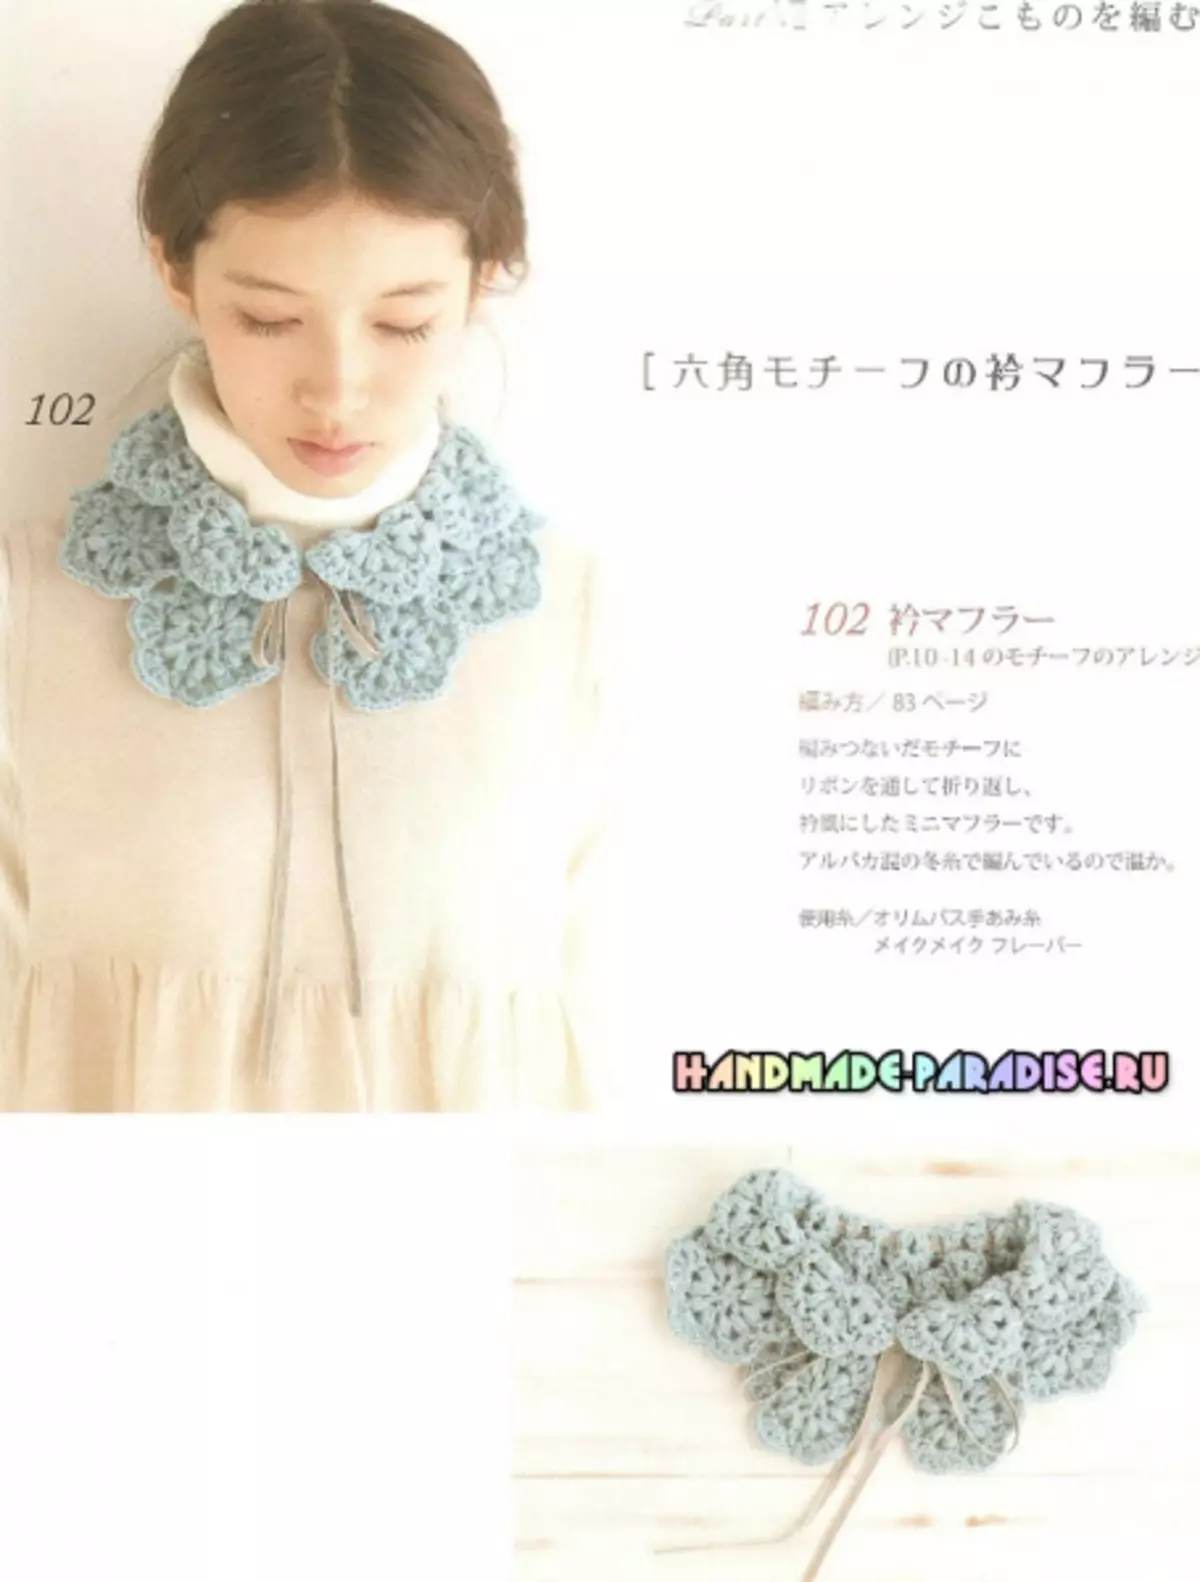 იაპონიის ჟურნალი Crochet სქემებით